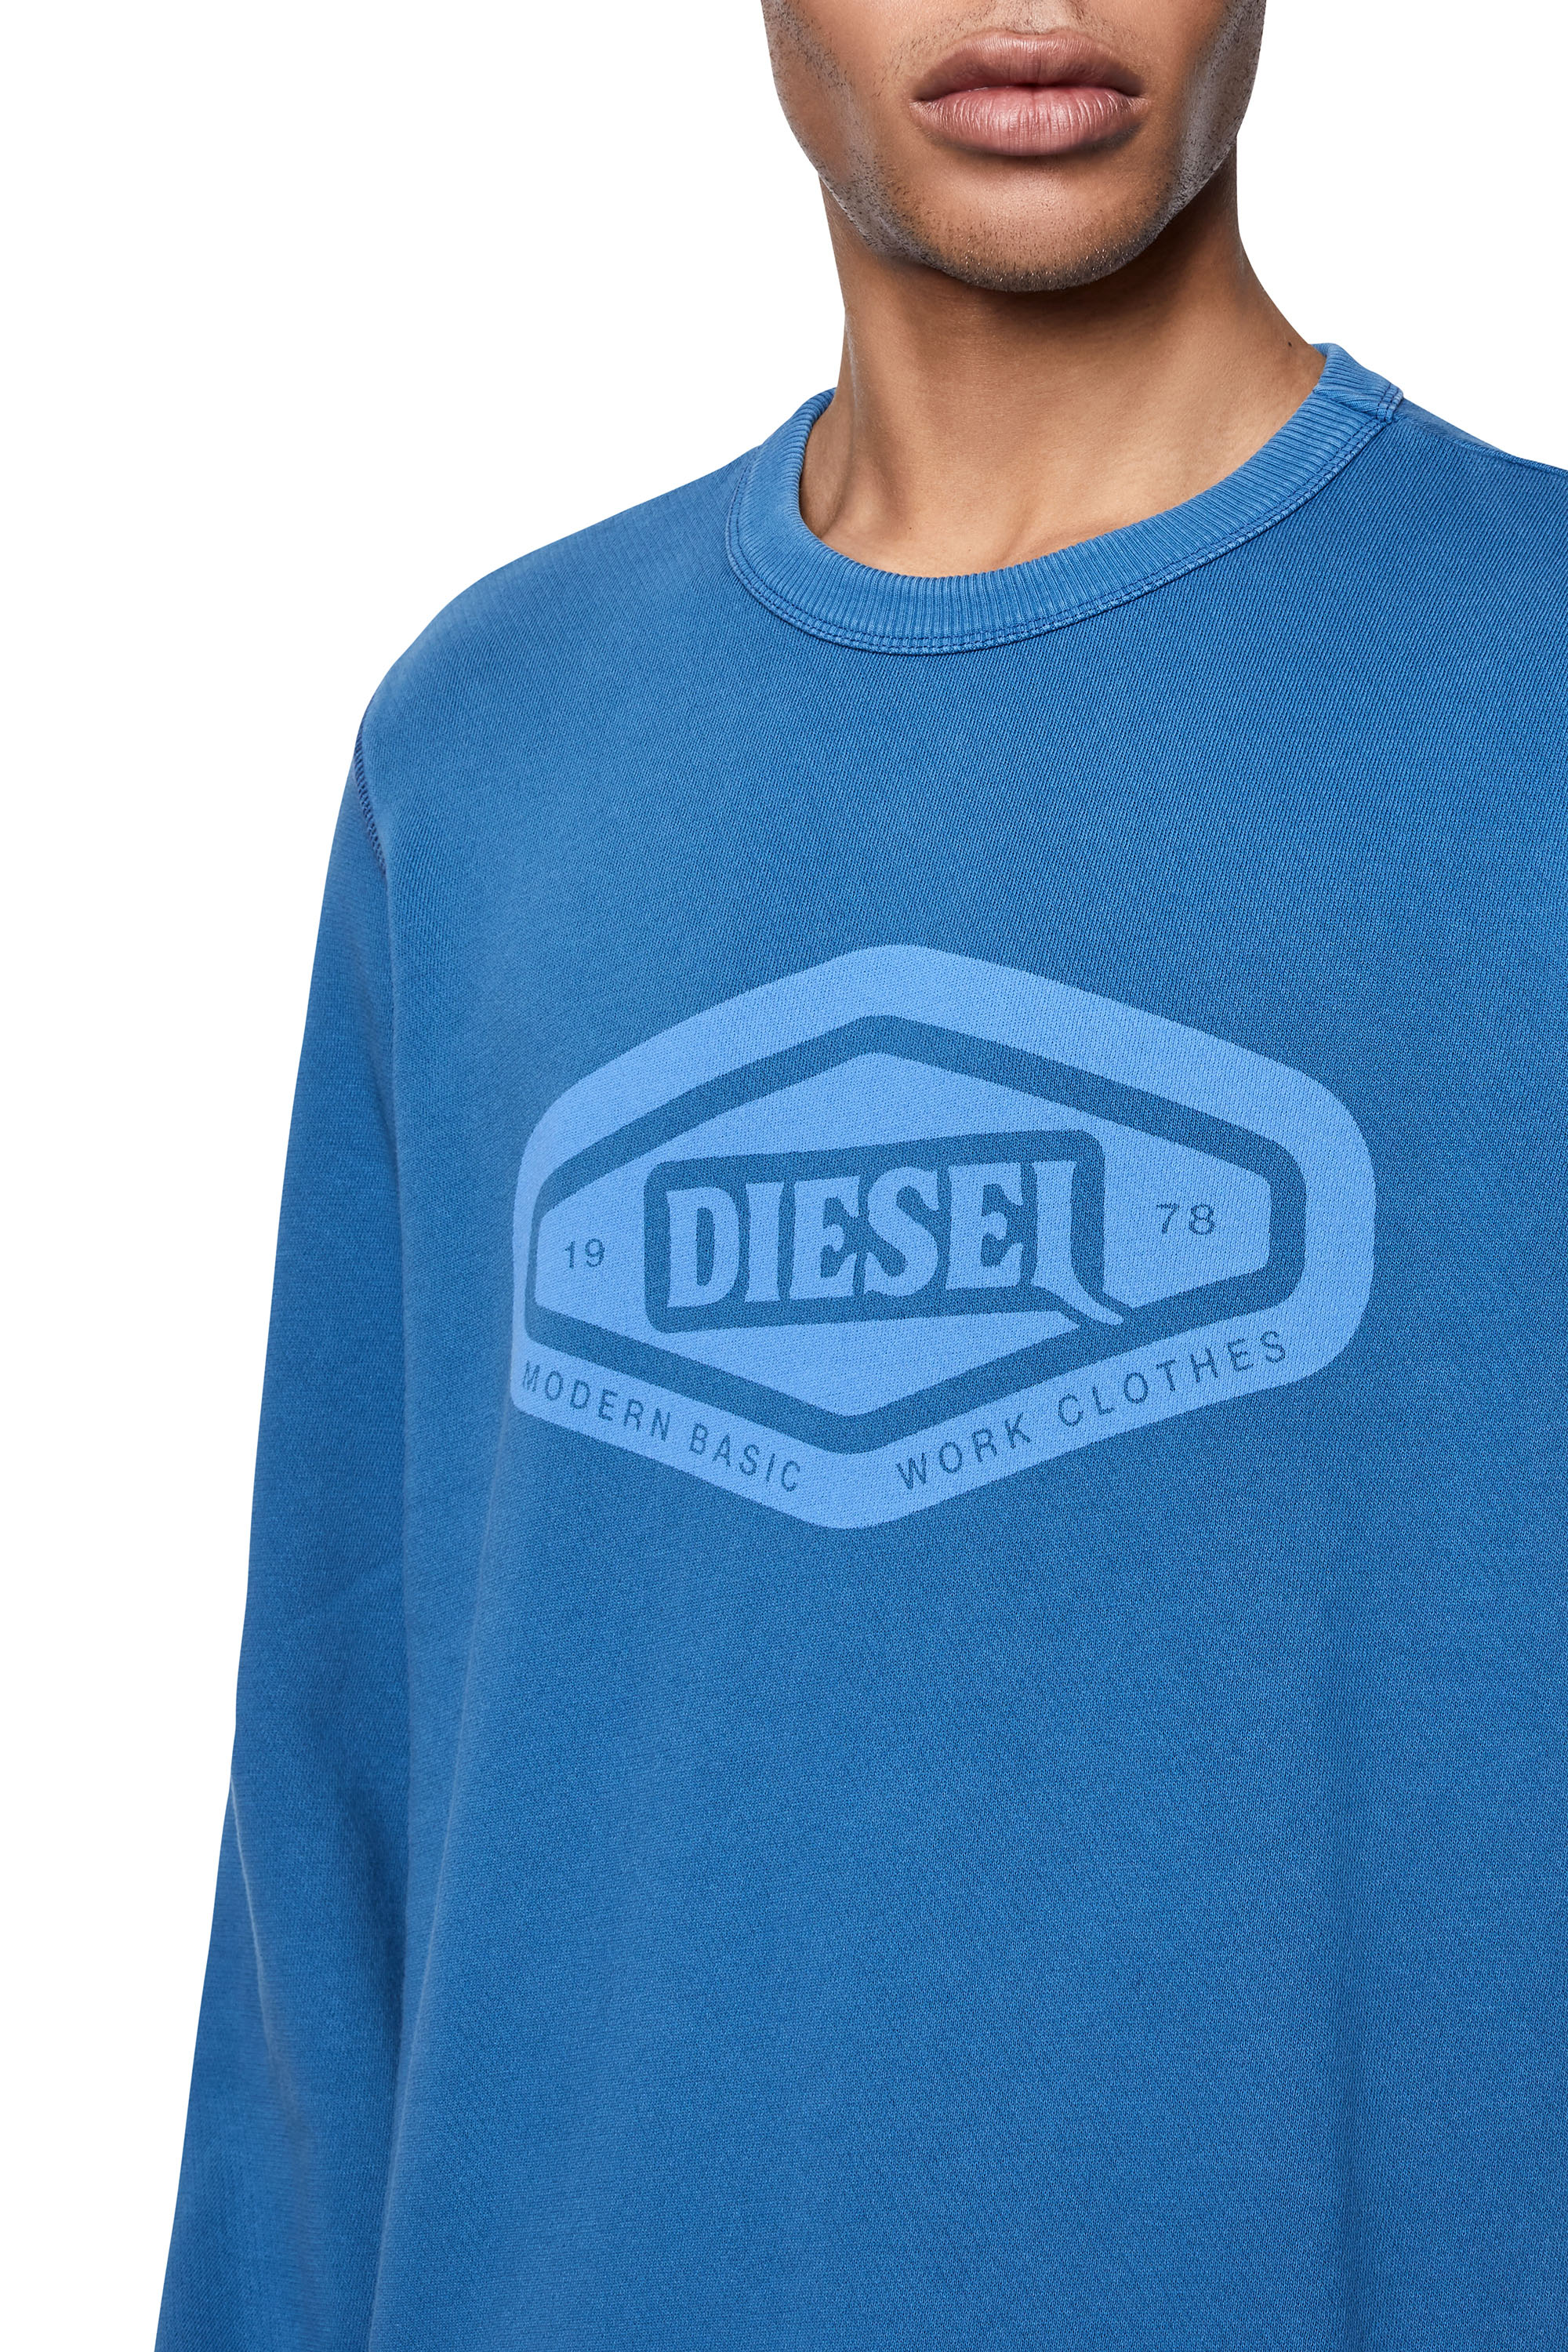 Diesel - S-GINN-D1, Blau - Image 3